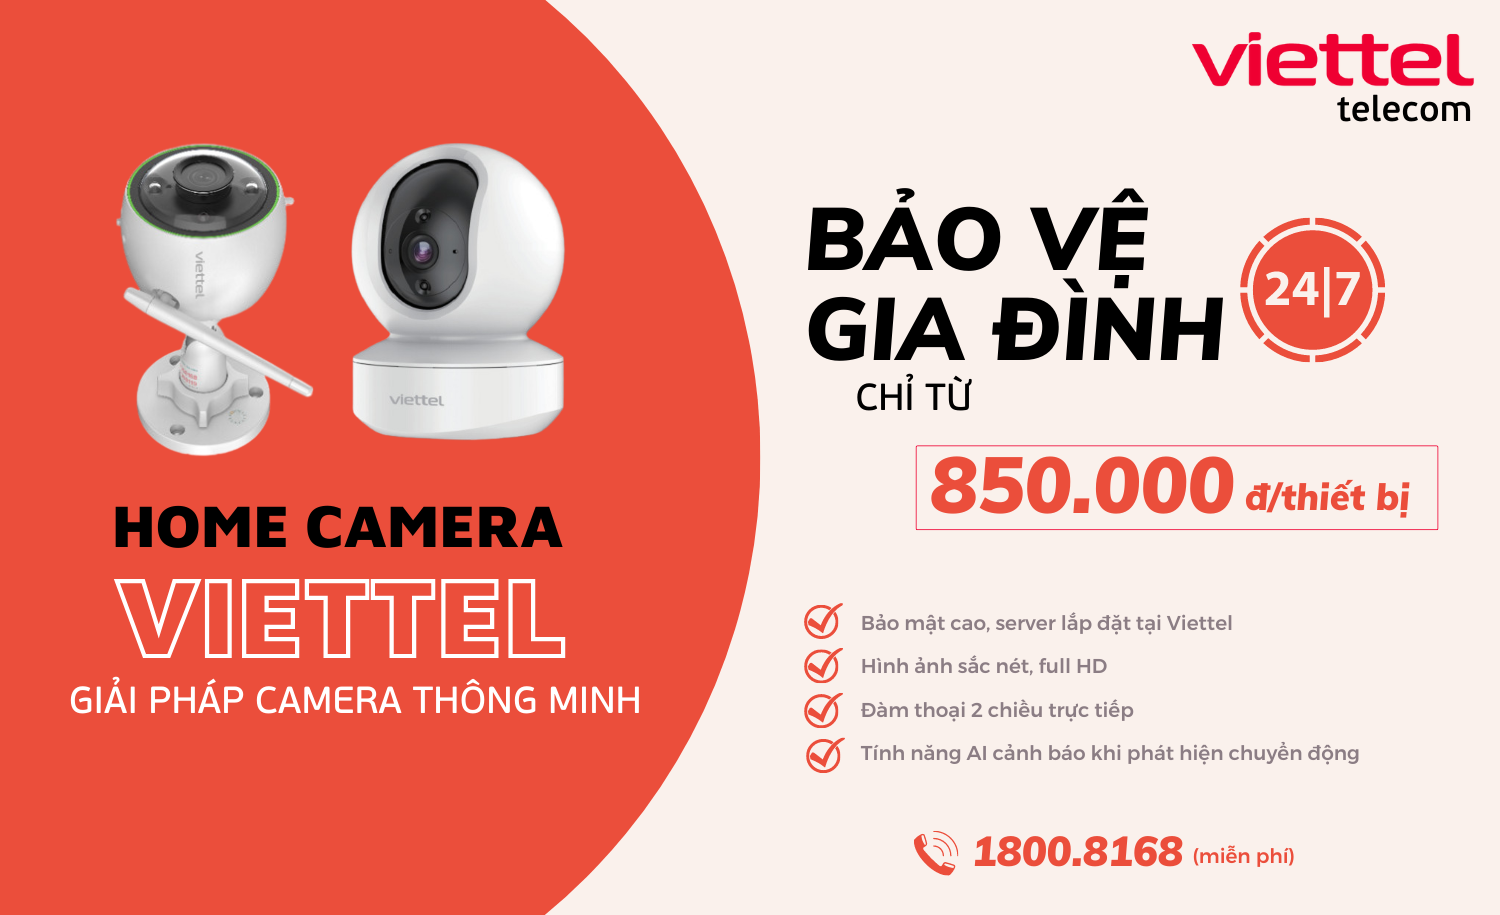 Home Camera Viettel mang đến những tính năng ưu việt gì cho khách ...